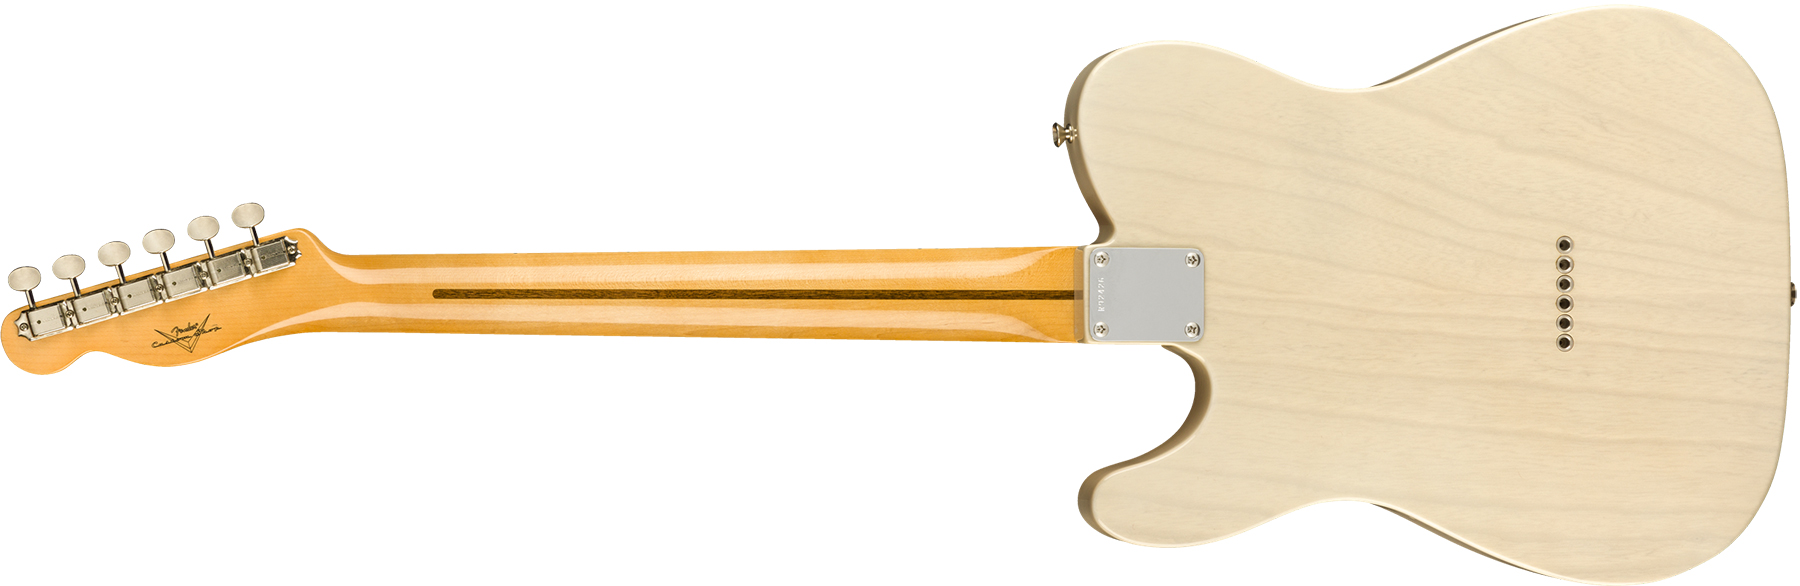 Fender Custom Shop Tele Vintage Custom 1958 Top Load Ltd Mn - Nos Aged White Blonde - Guitare Électrique Forme Tel - Variation 1